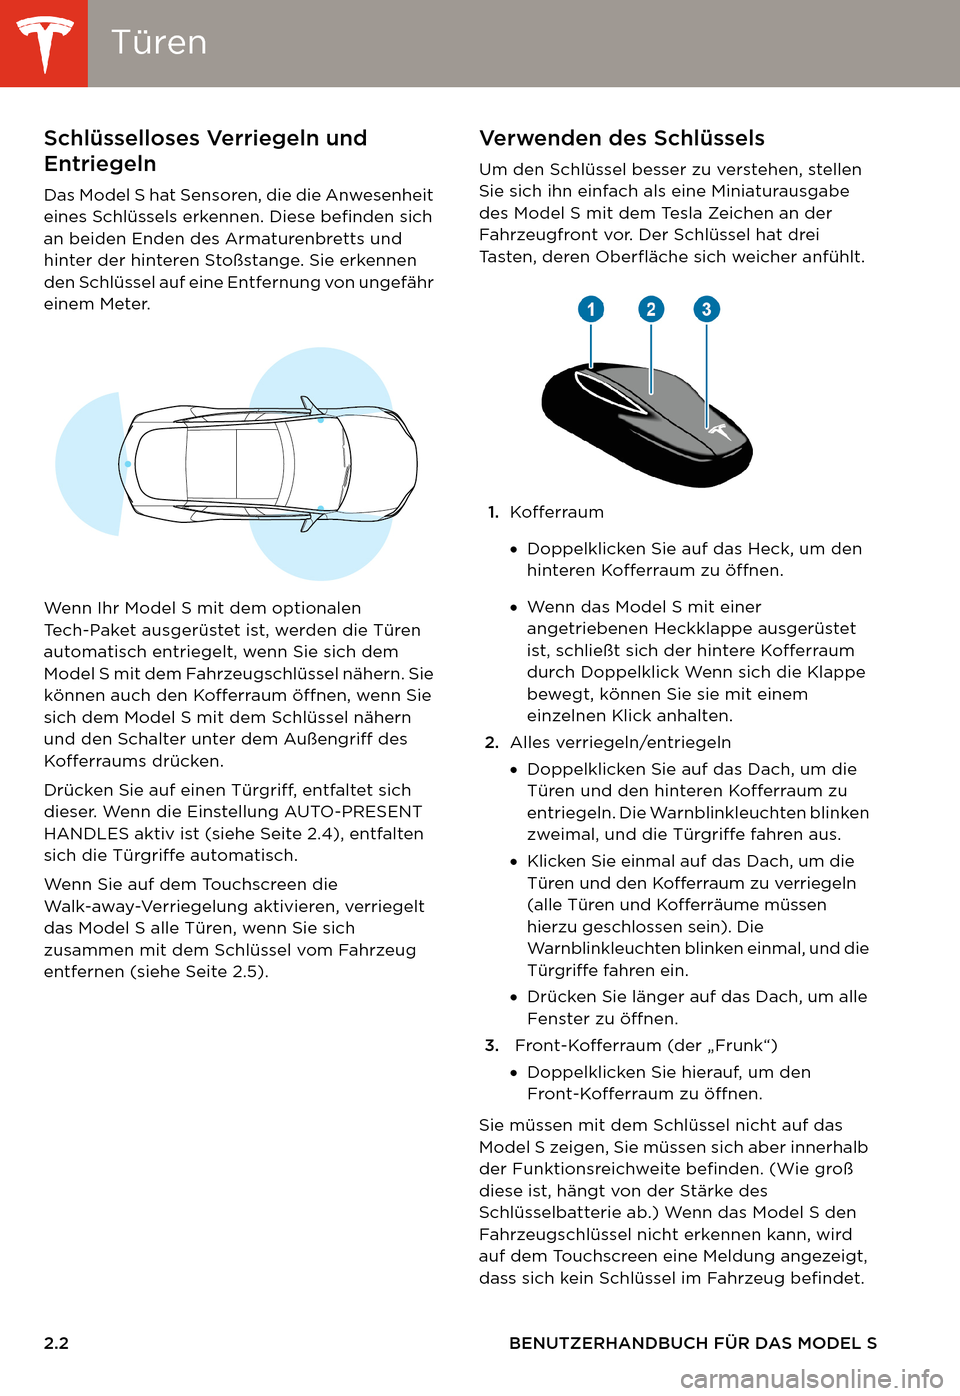 TESLA MODEL S 2014  Betriebsanleitung (in German) TürenTüren
2.2 BENUTZERHANDBUCH FÜR DAS MODEL S
ÖFFNEN UND SCHLIESSEN Tü r e nSchlüsselloses Verriegeln und 
Entriegeln  
Das Model S hat Sensoren, die die Anwesenheit 
eines Schlüssels erkenne